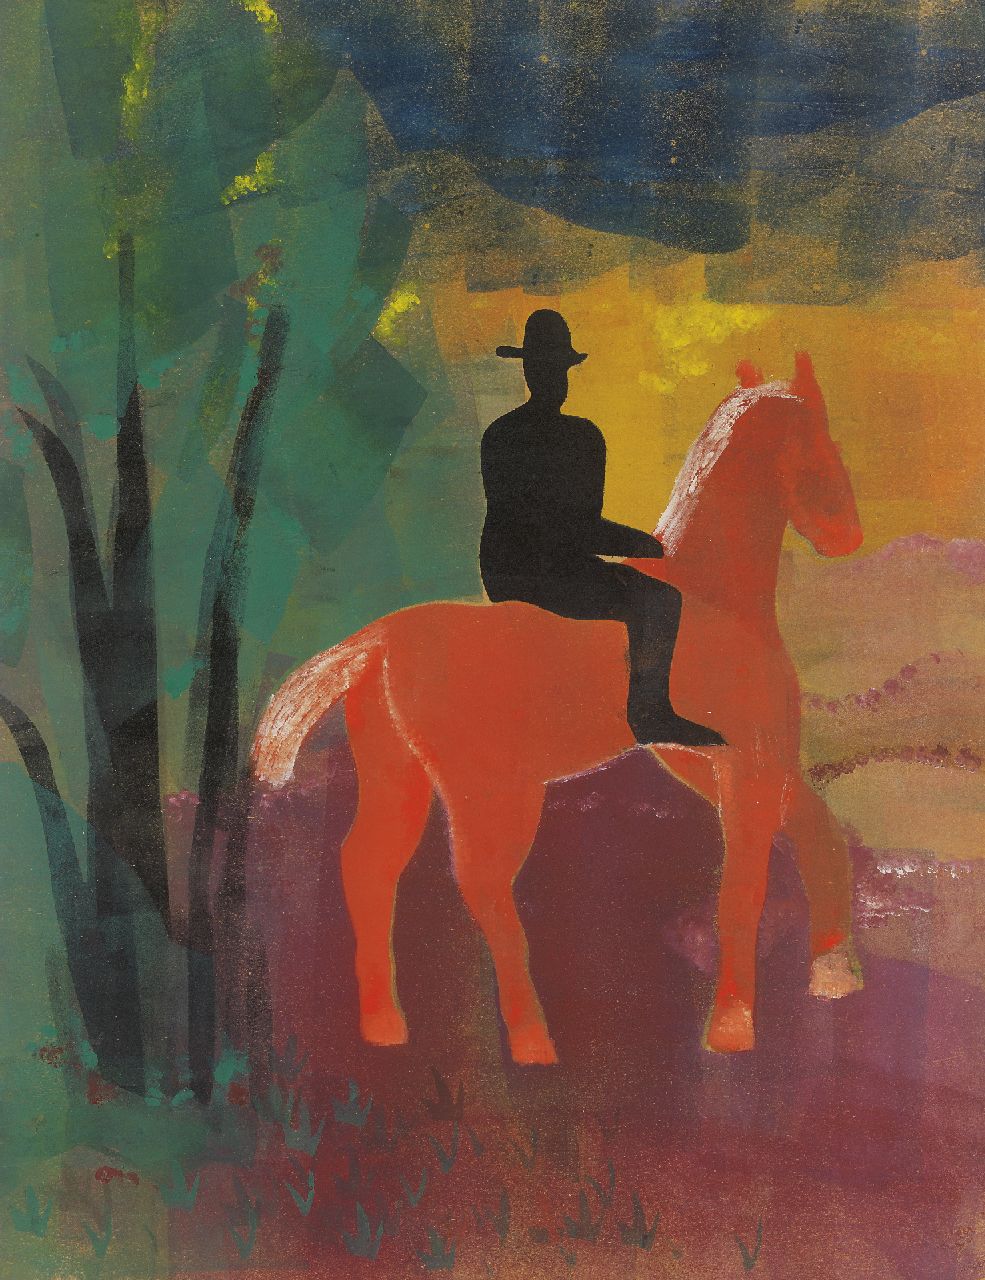 Werkman H.N.  | Hendrik Nicolaas Werkman, Rood paard met zwarte ruiter, sjabloon, inktrol, drukinkt op papier 65,0 x 50,0 cm, gedateerd 1944